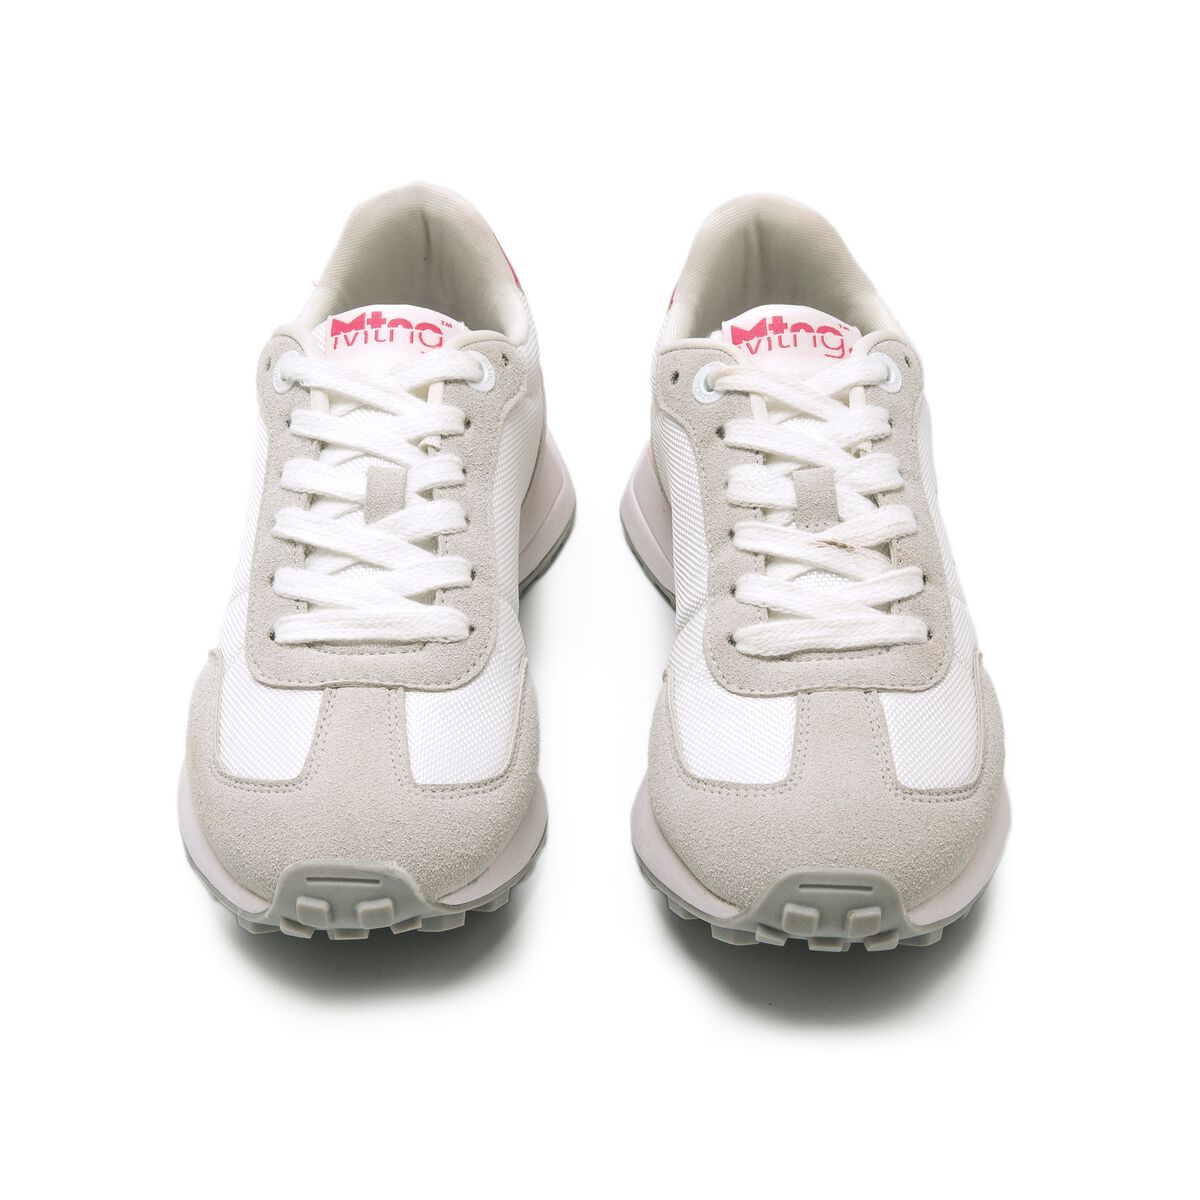 Zapatillas blancas para mujer Mustang Zinc online en MEGACALZADO